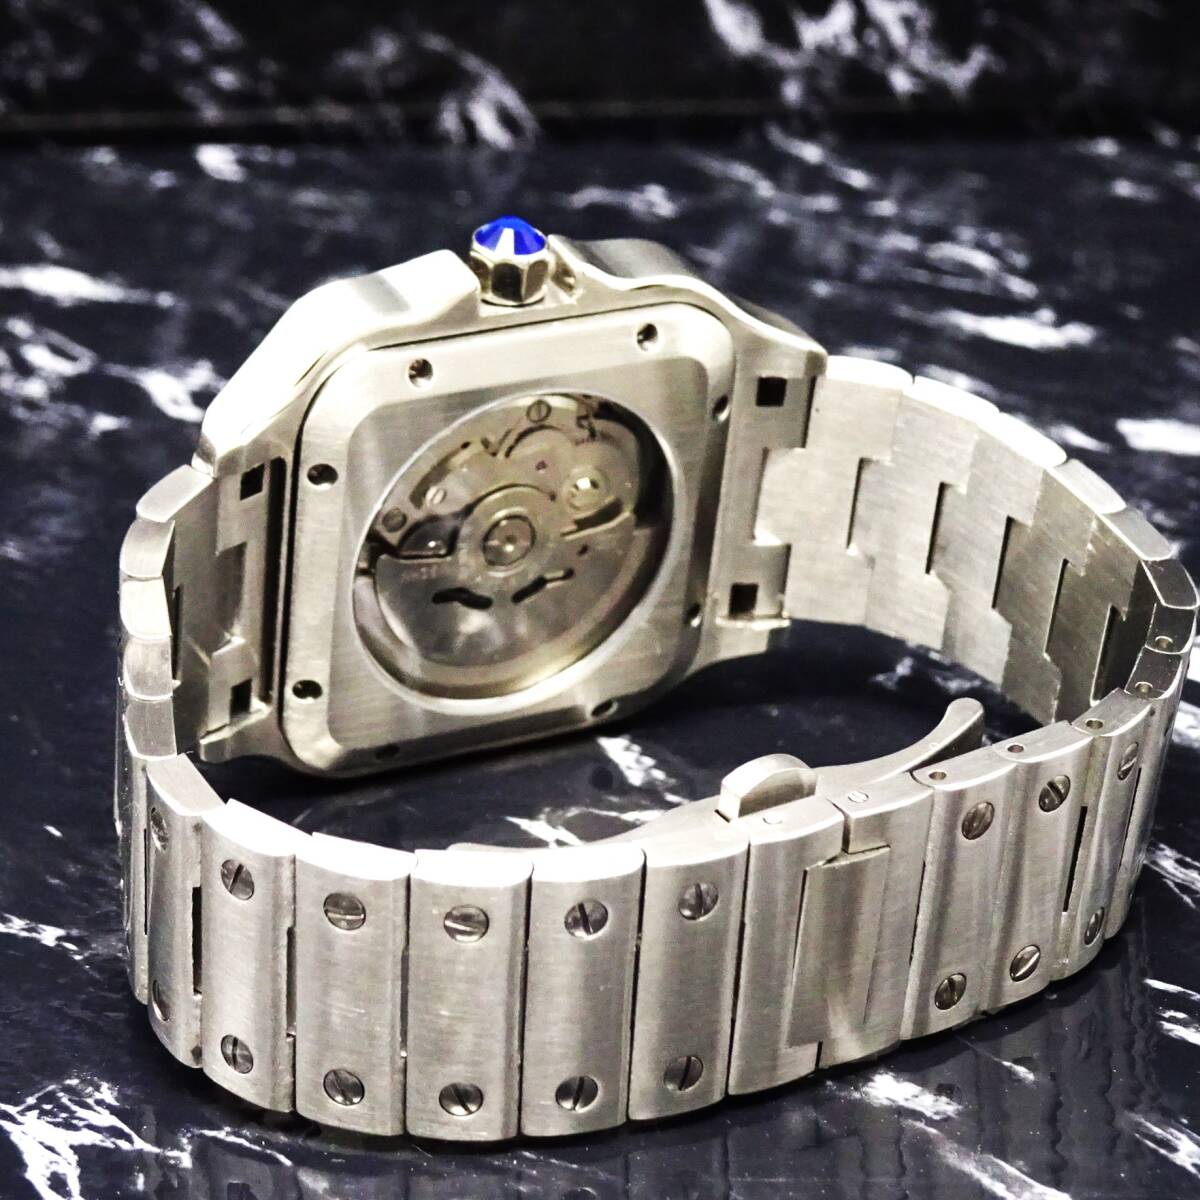 〓送料無料〓新品〓ノーロゴ・スクエア・ローマ数字・オマージュウオッチ腕時計・NH35ムーブメント機械式・フル316Lステンレス製モデル